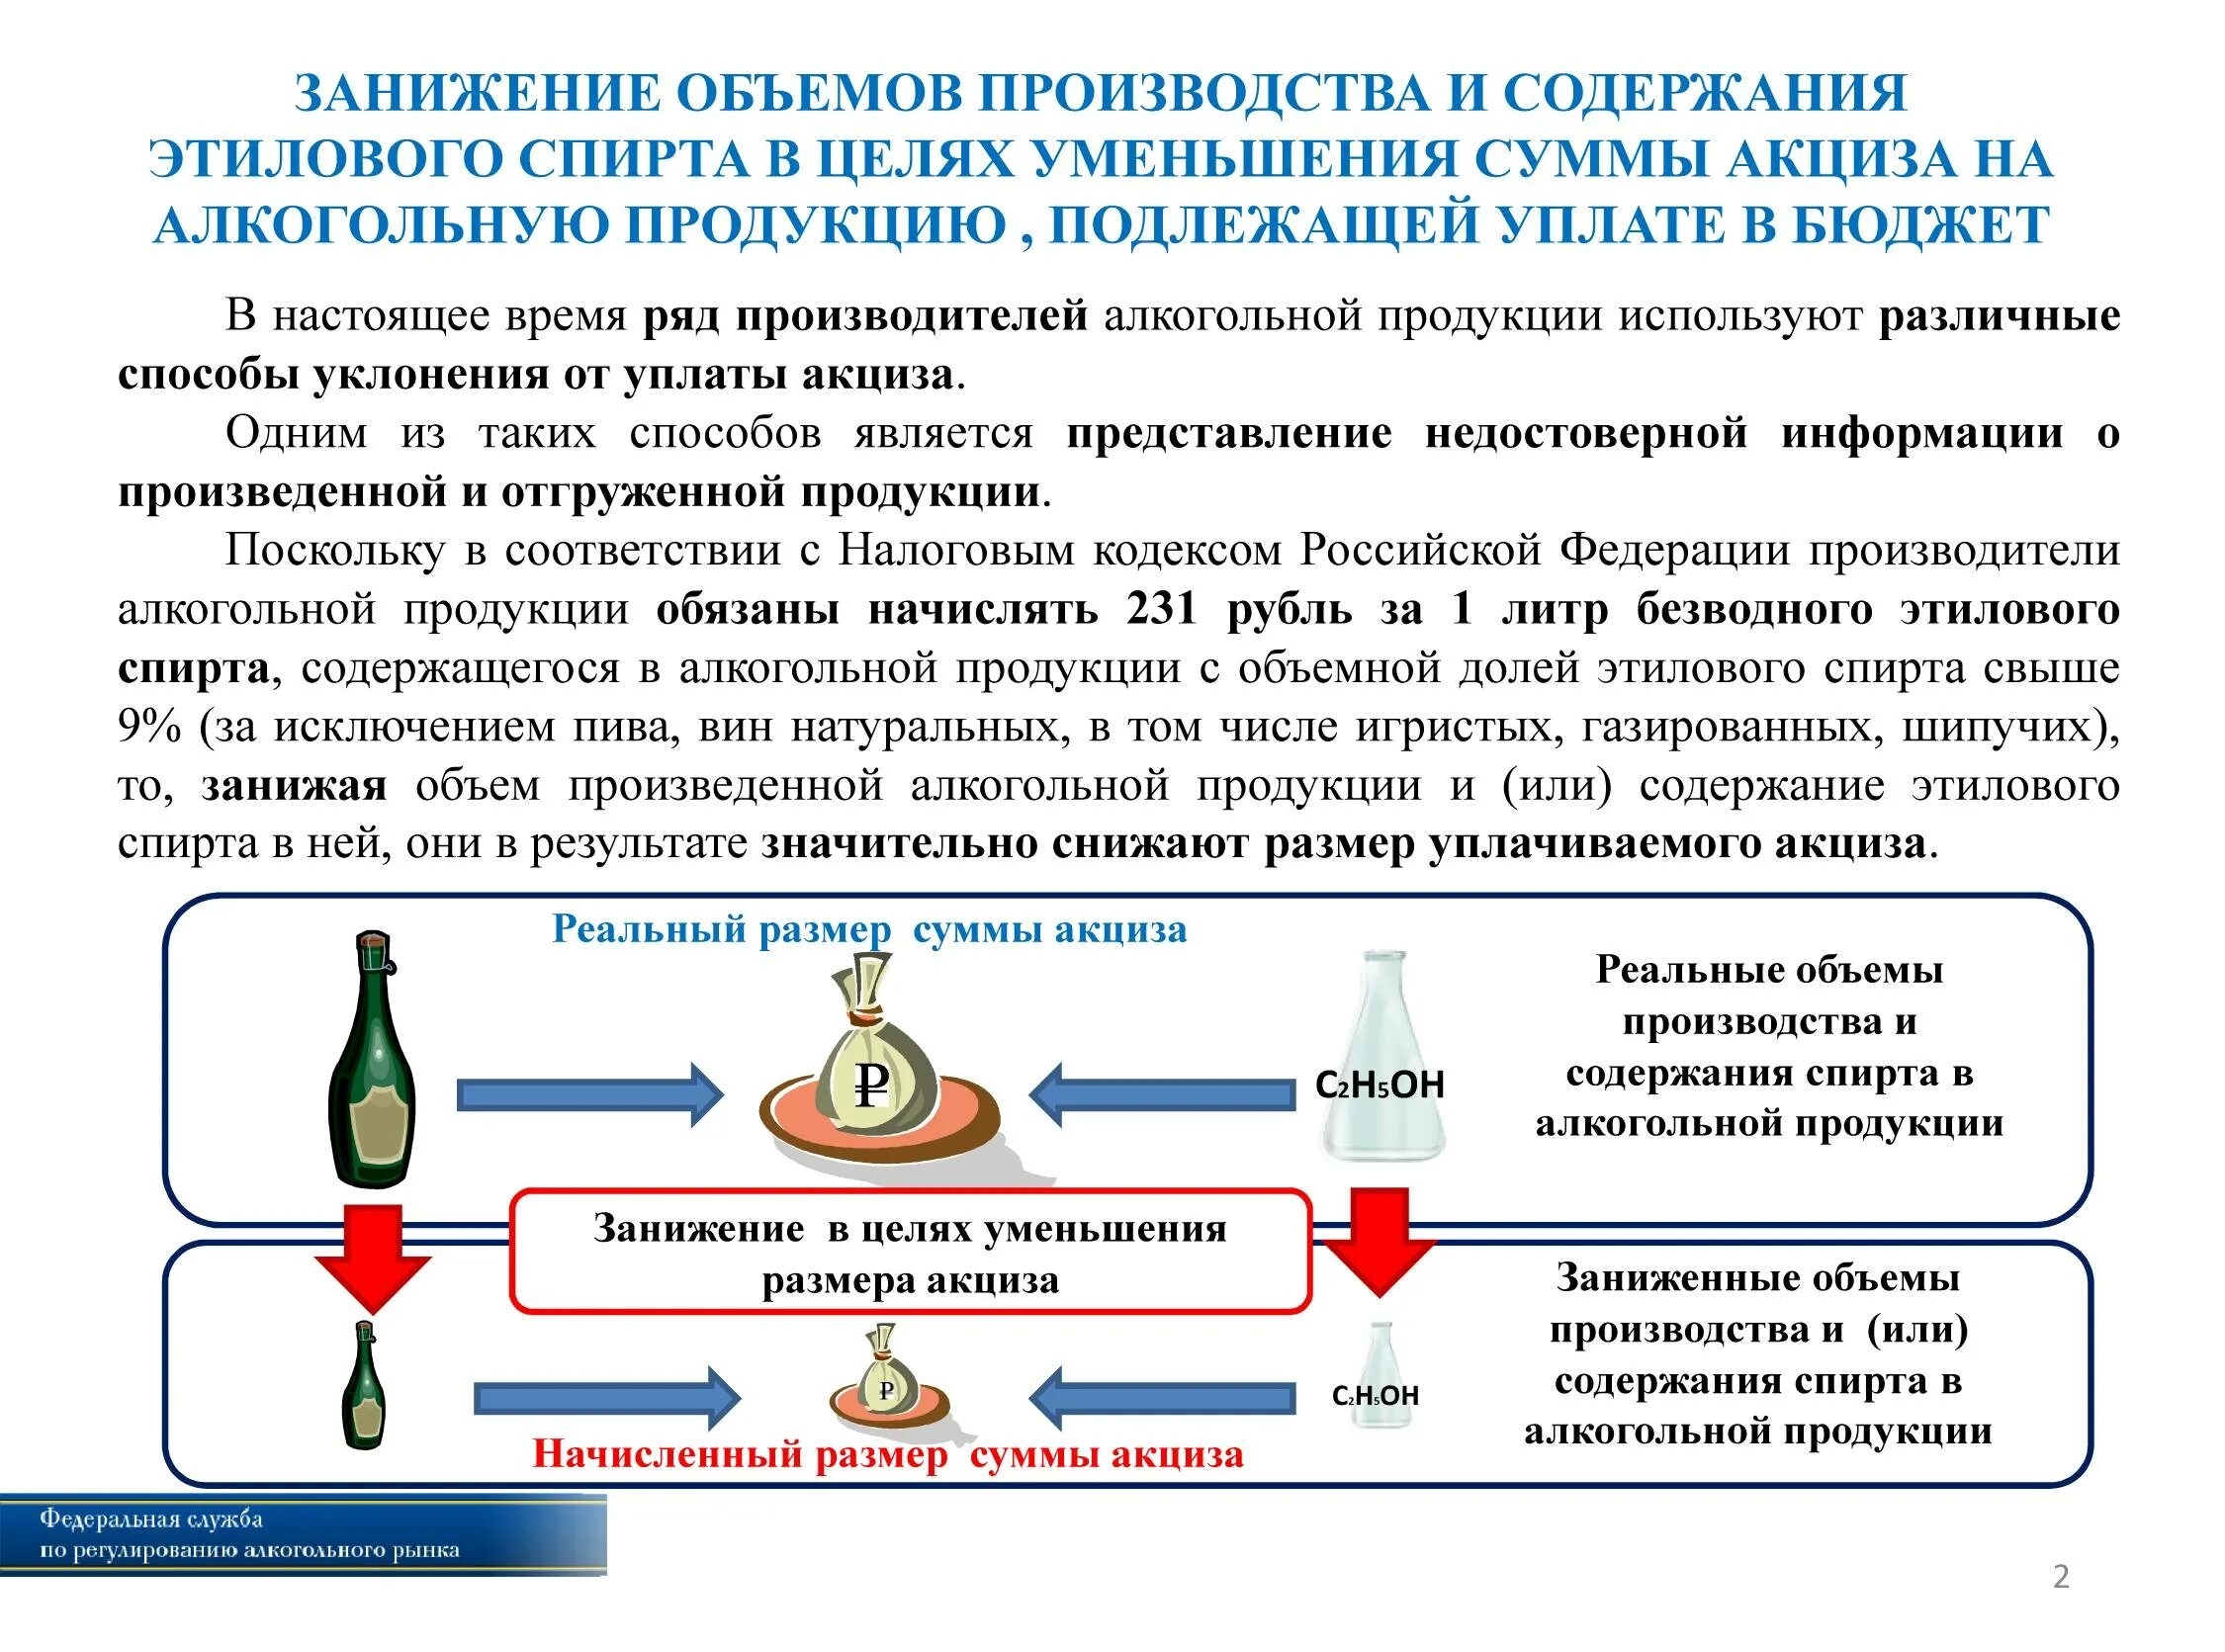 Фз производство и оборот этилового спирта. Реализация алкогольной продукции. Методы производства алкогольных напитков.